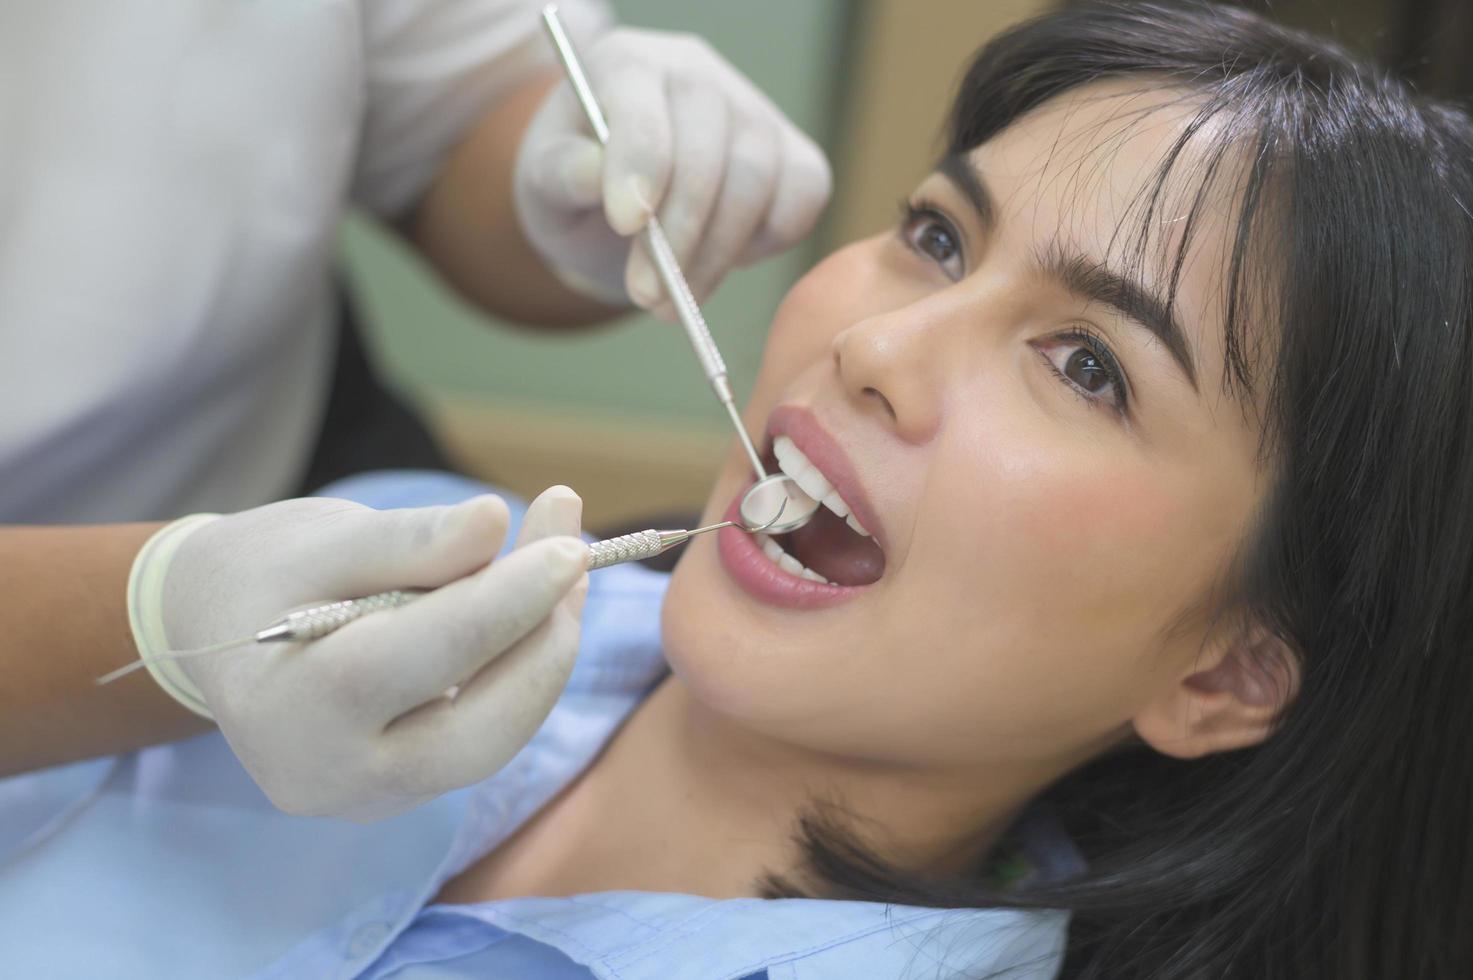 jonge vrouw met tanden onderzocht door tandarts in tandheelkundige kliniek, tandencontrole en gezond gebit concept foto